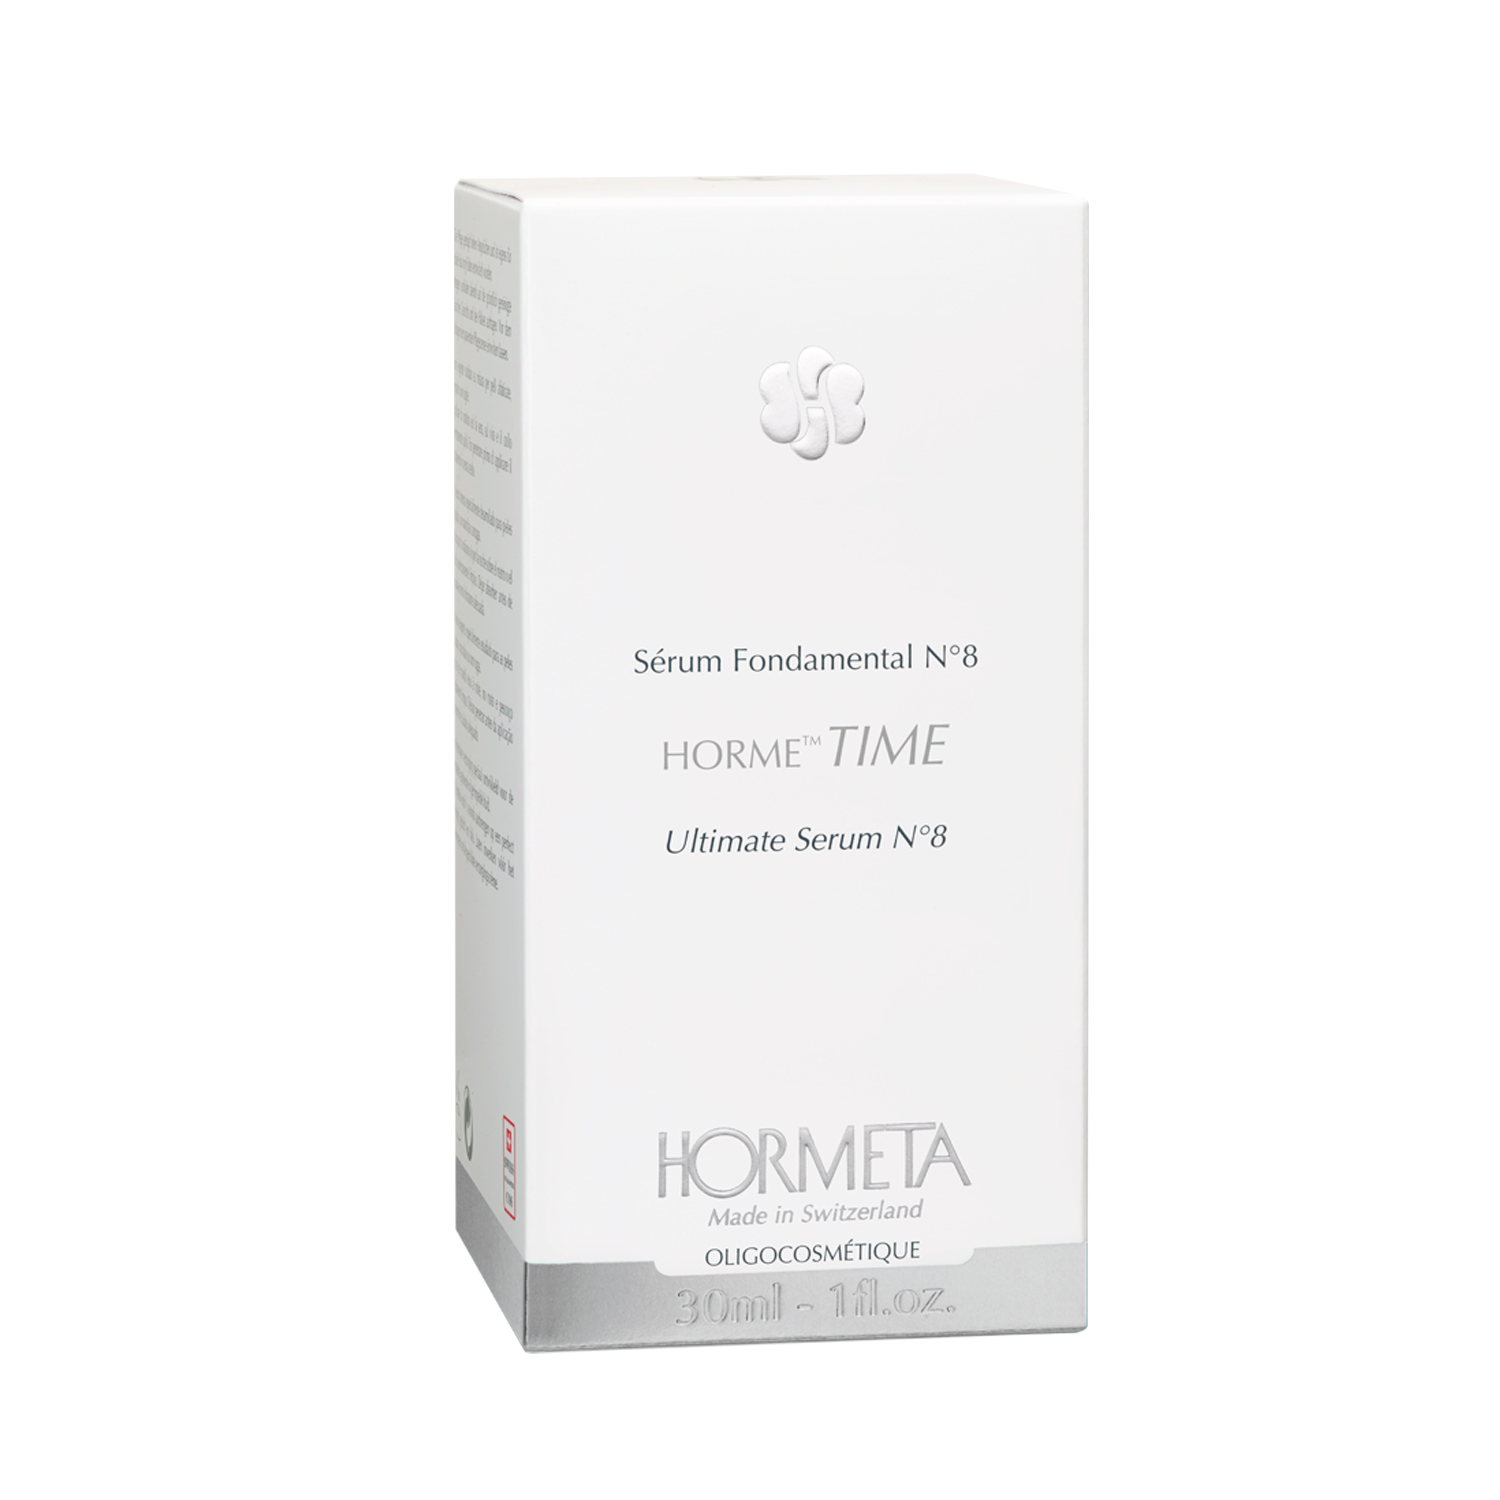 HORMETA HORME TIME Базовая сыворотка - сублиматор №8 30мл hormeta horme gold регенерирующая сыворотка для лица 30мл